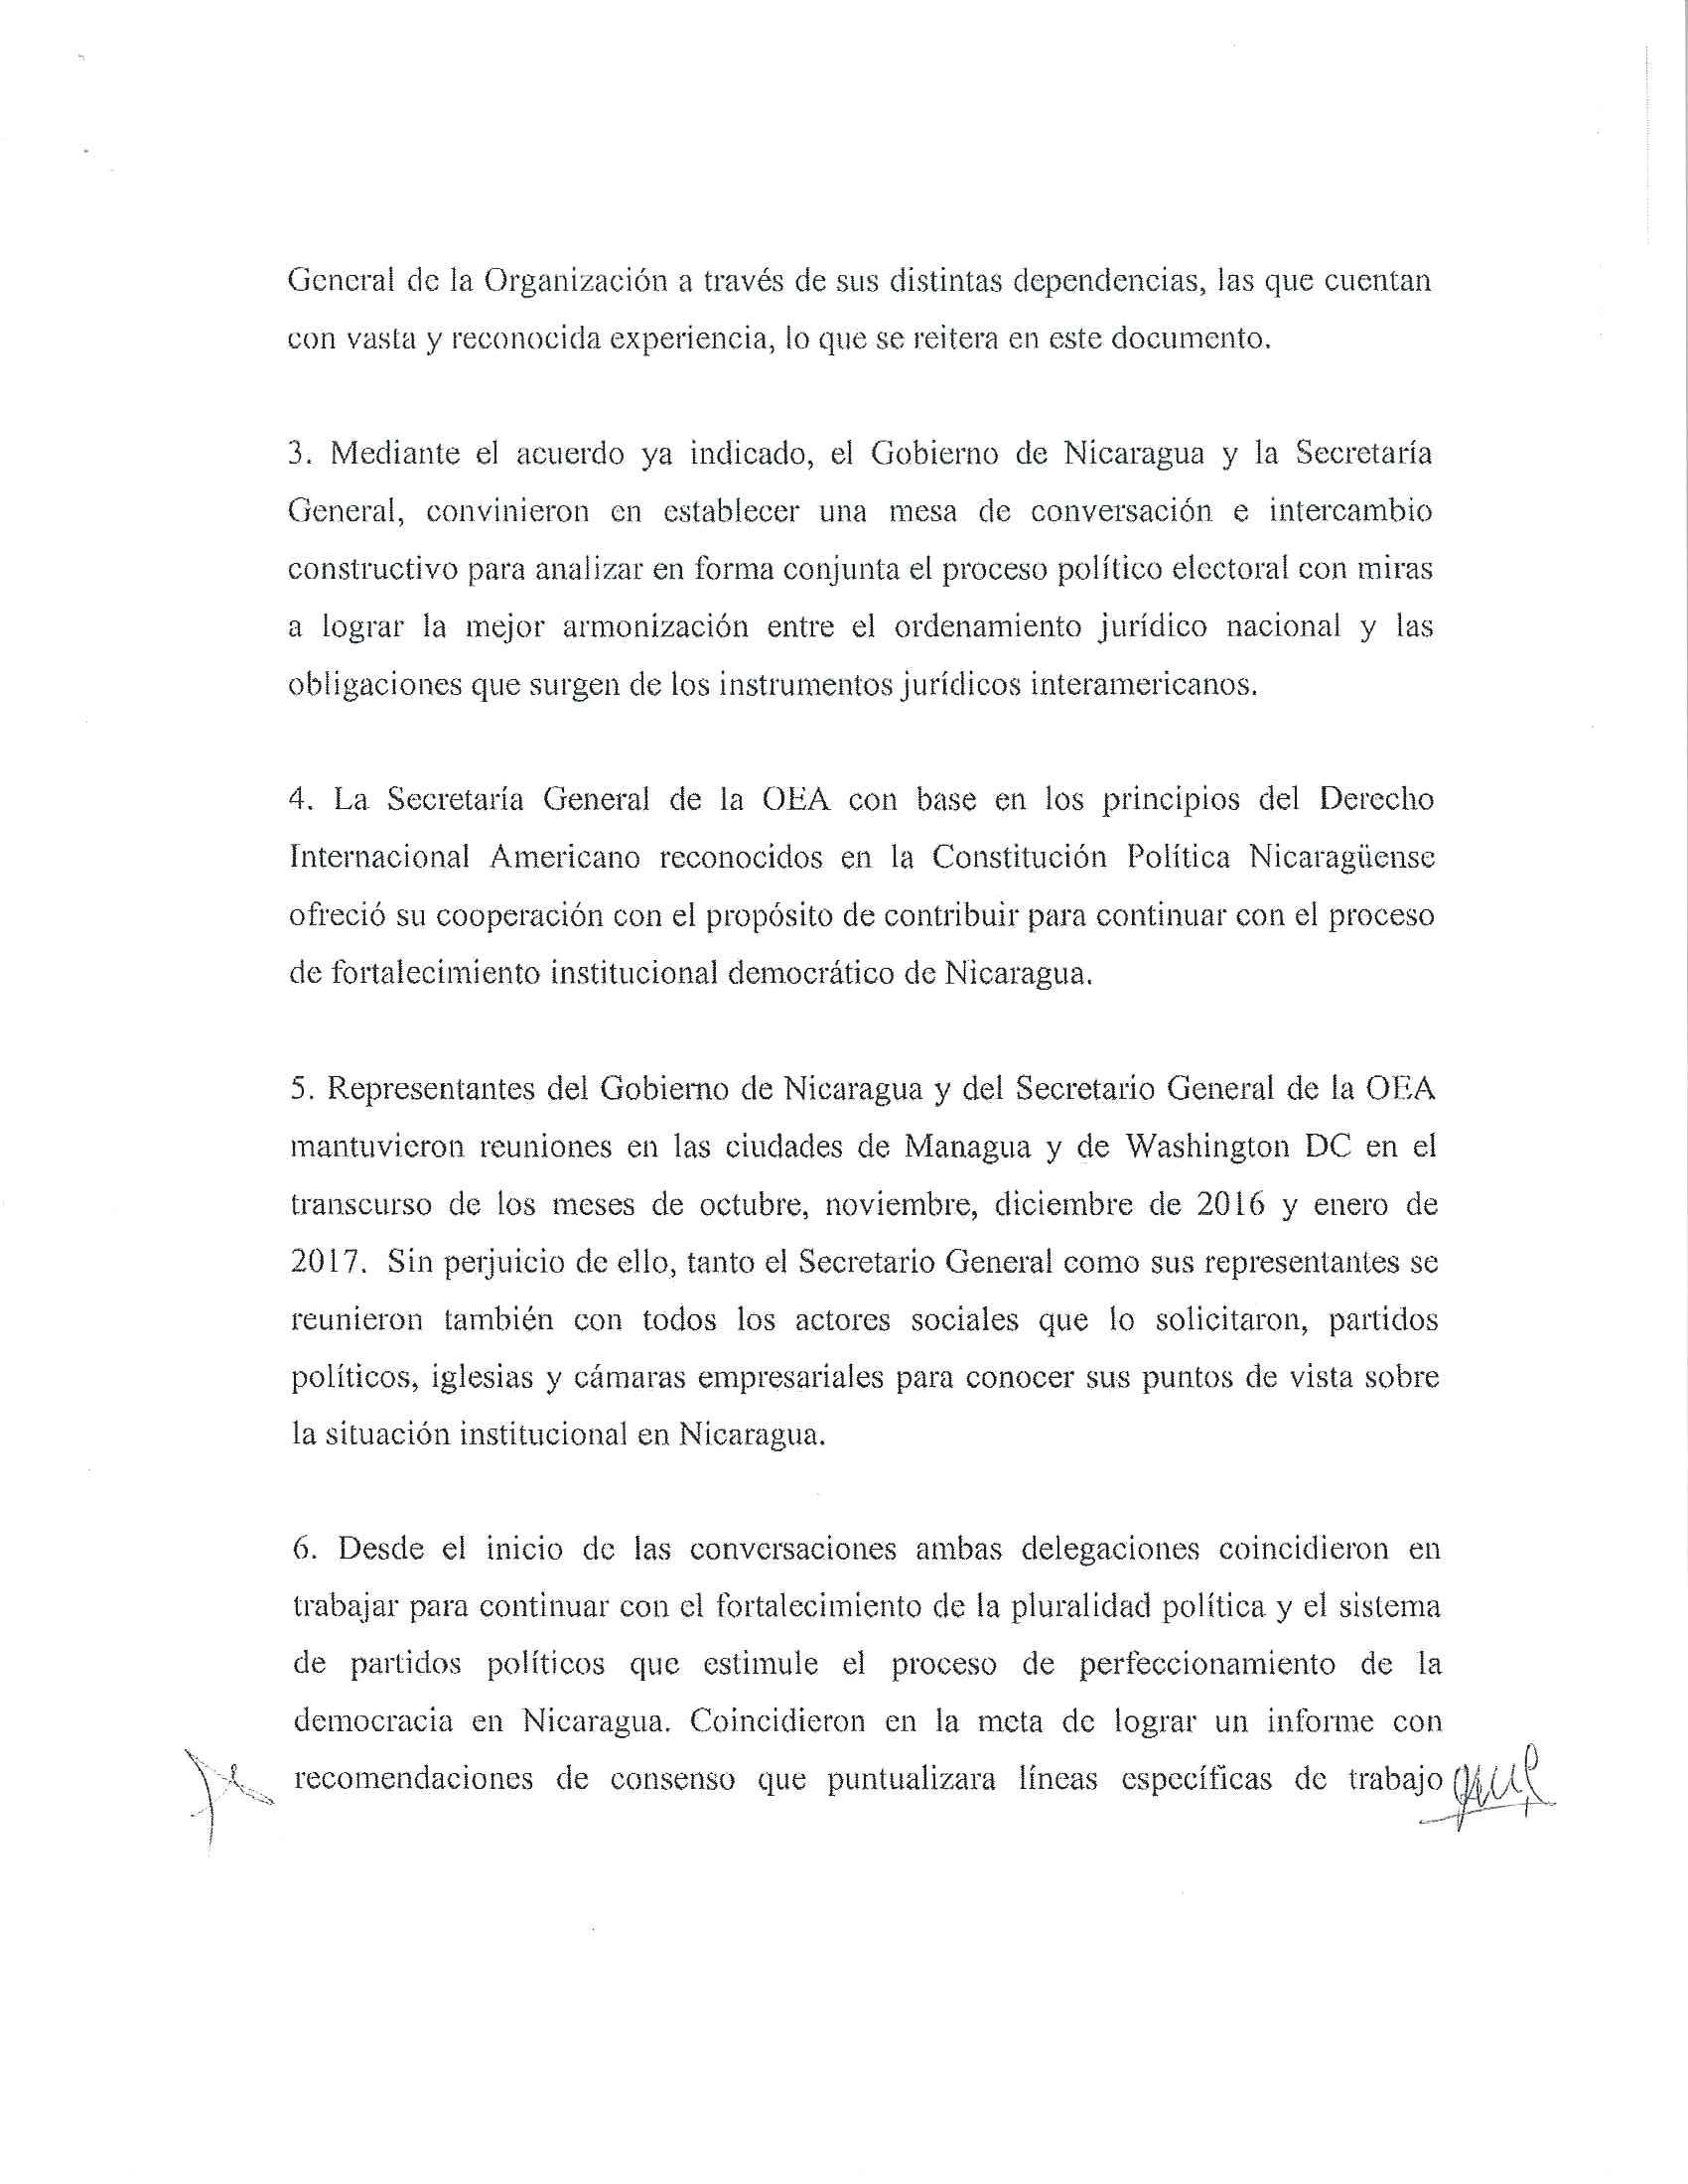 Acuerdo Nicaragua OEA 2017 2/6